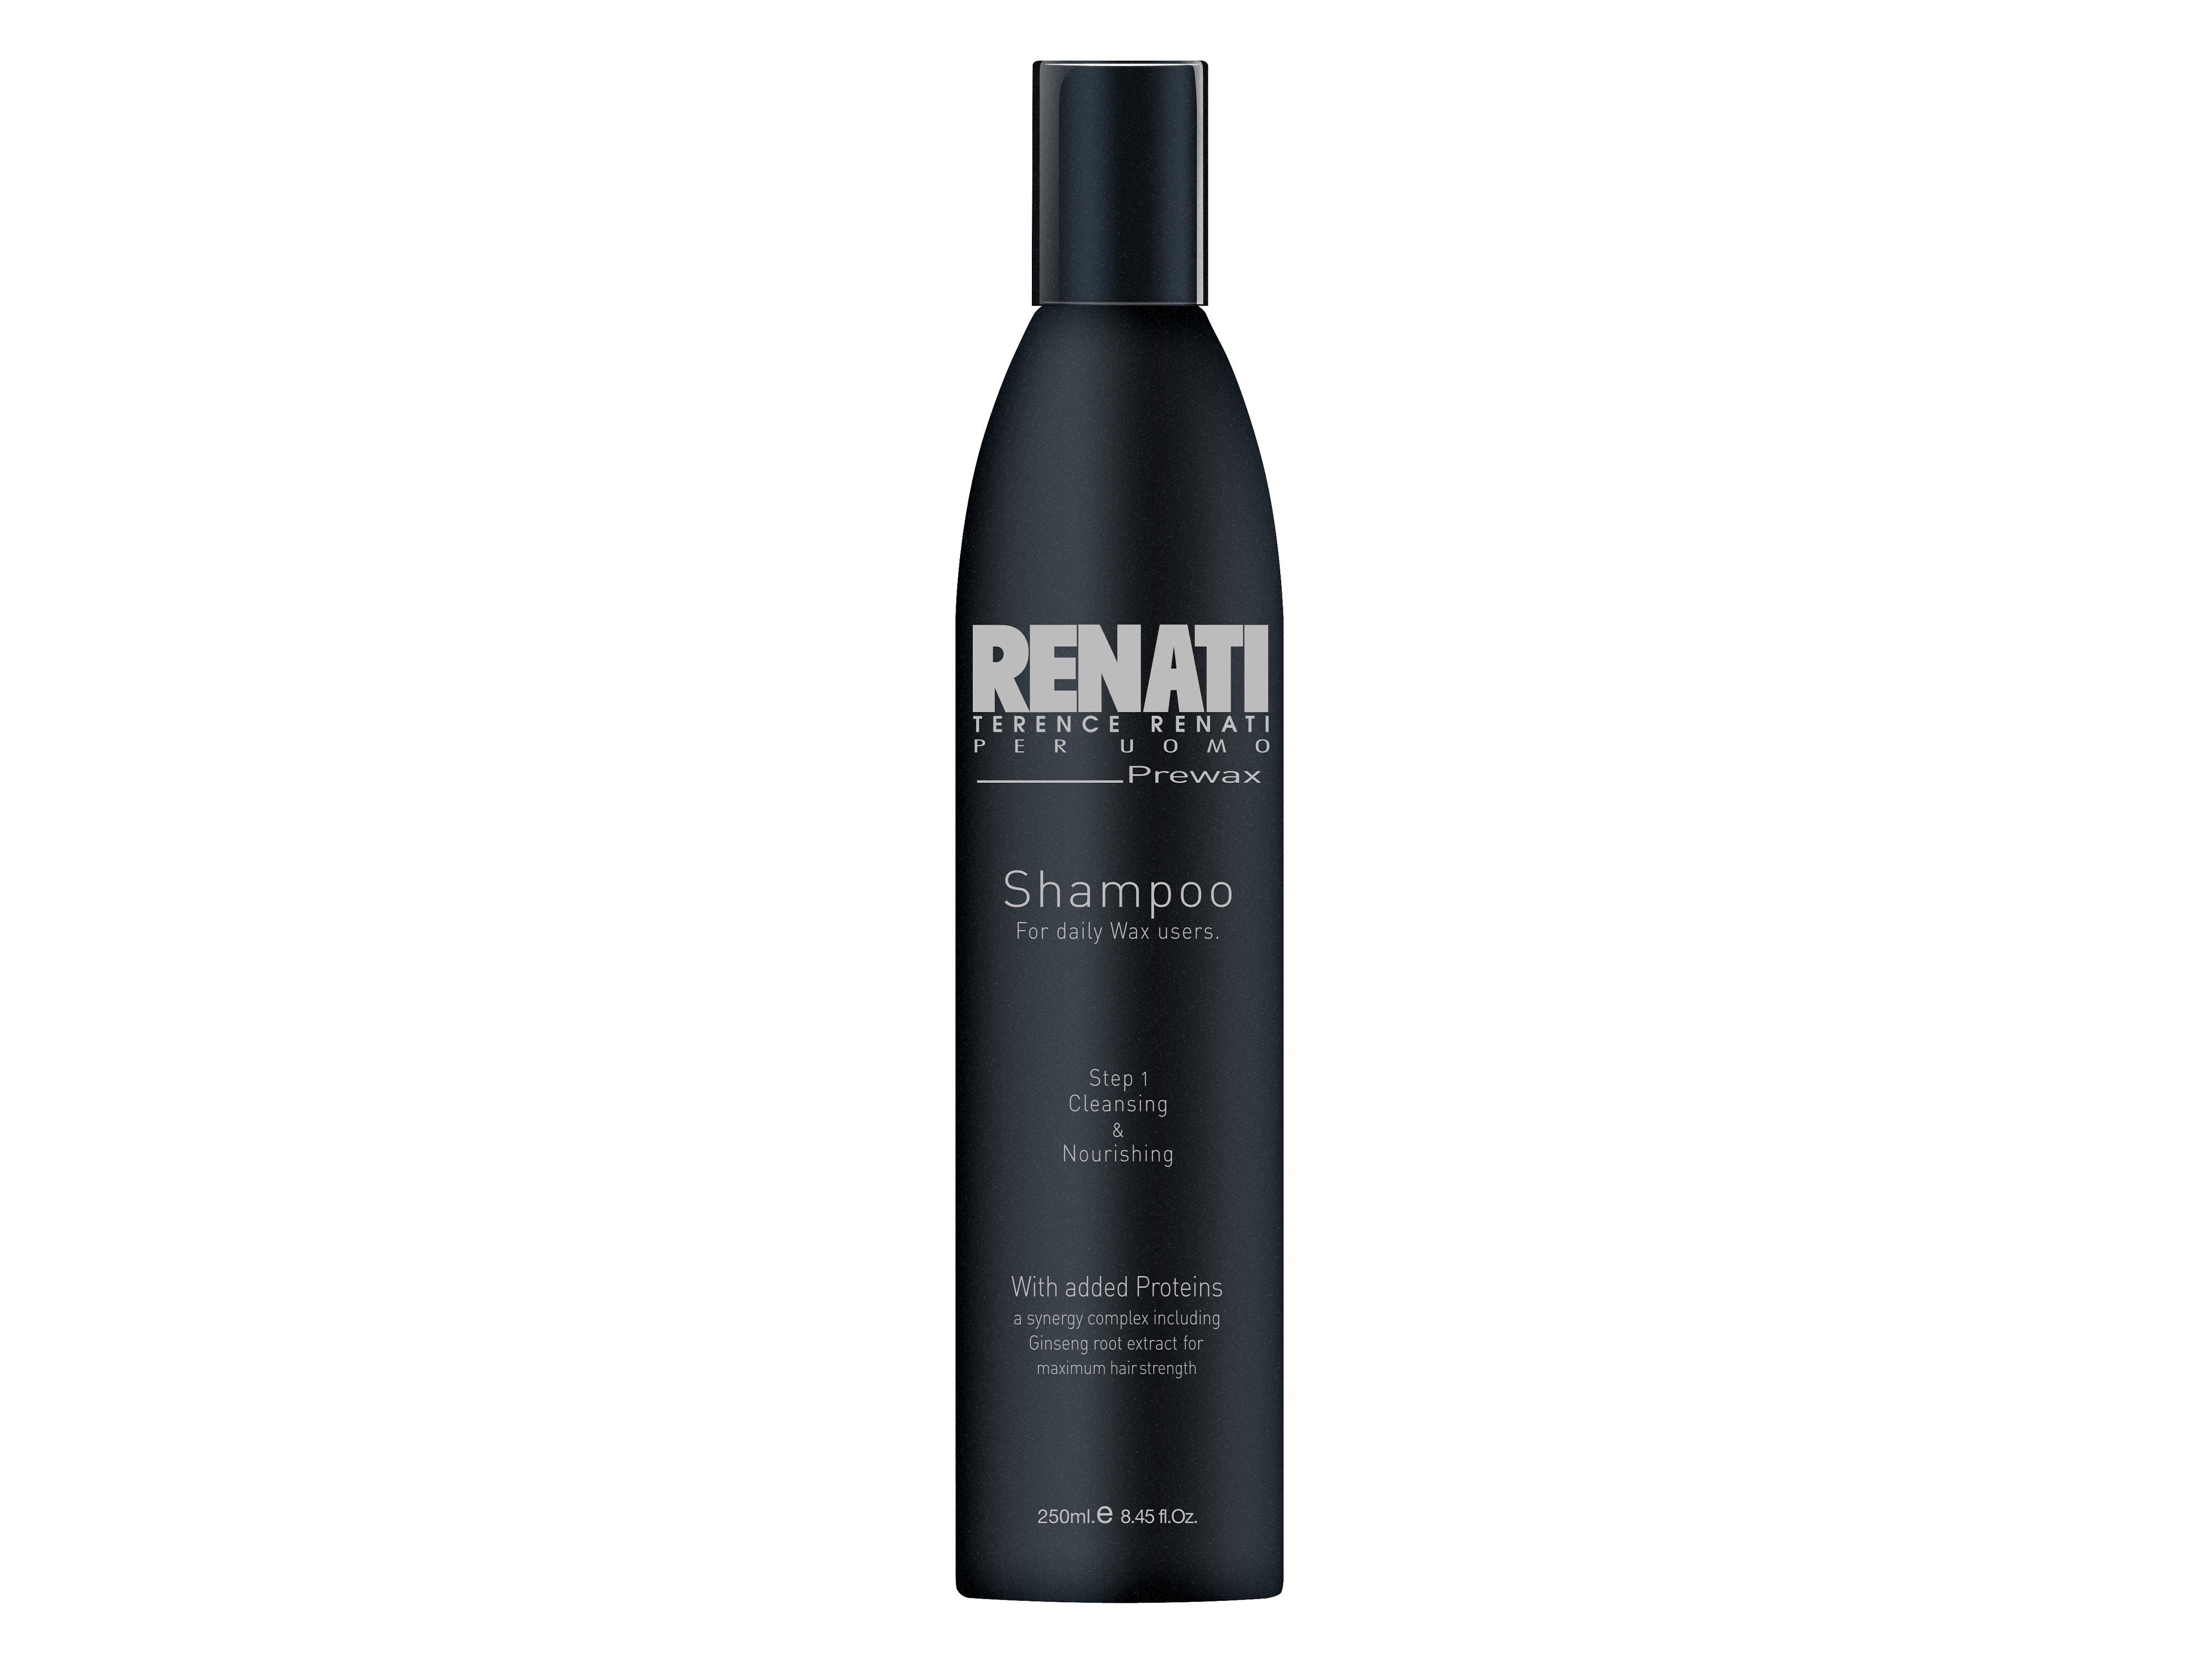 Renati Per Uomo Pre-Wax Shampoo, 250 ml